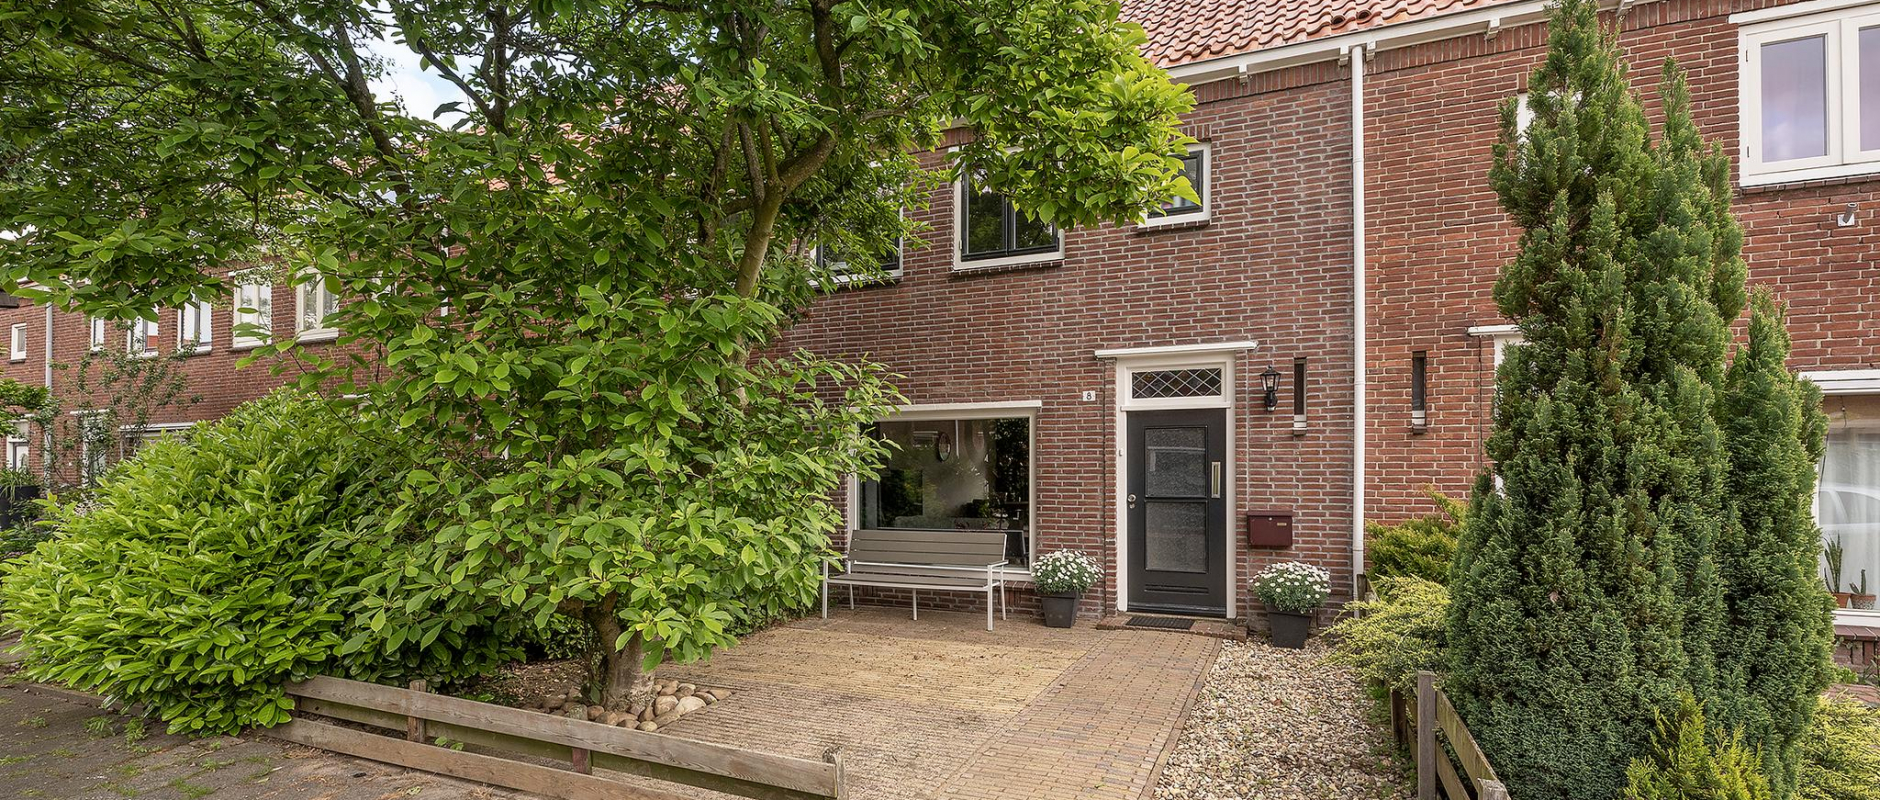 Woning te koop aan de Johan de Wittstraat 8 te Zwolle